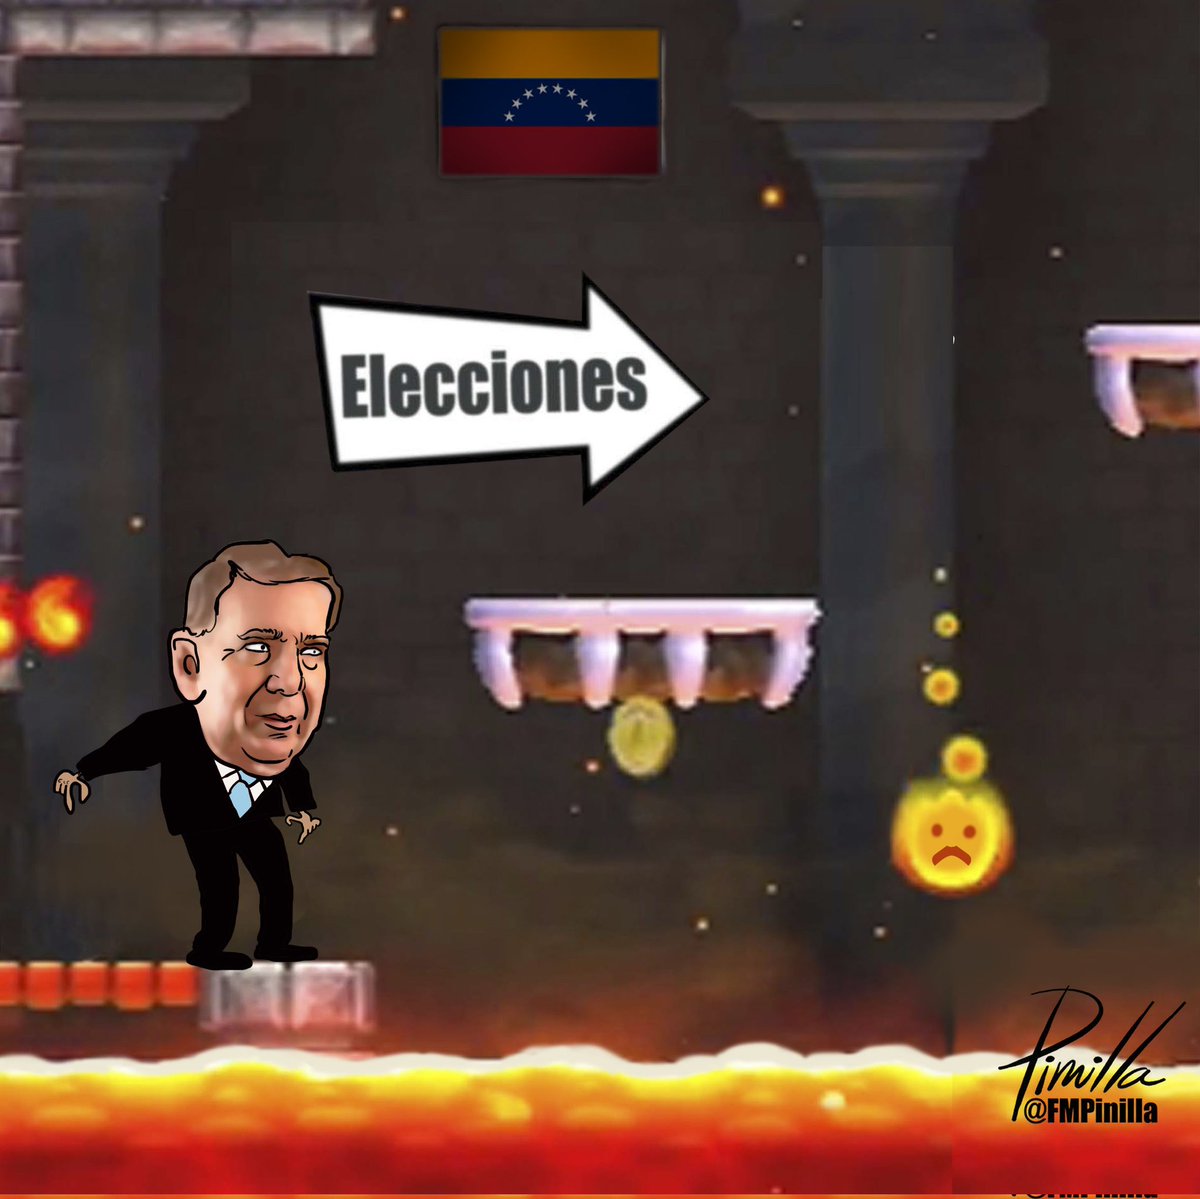 Camino a las elecciones...
•
#dibujolibre para @dlasamericas_
•
#caricatura #cartoon #usa #eeuu🇺🇸 #eeuuu #politicalcartoon #Venezuela #venezolanos